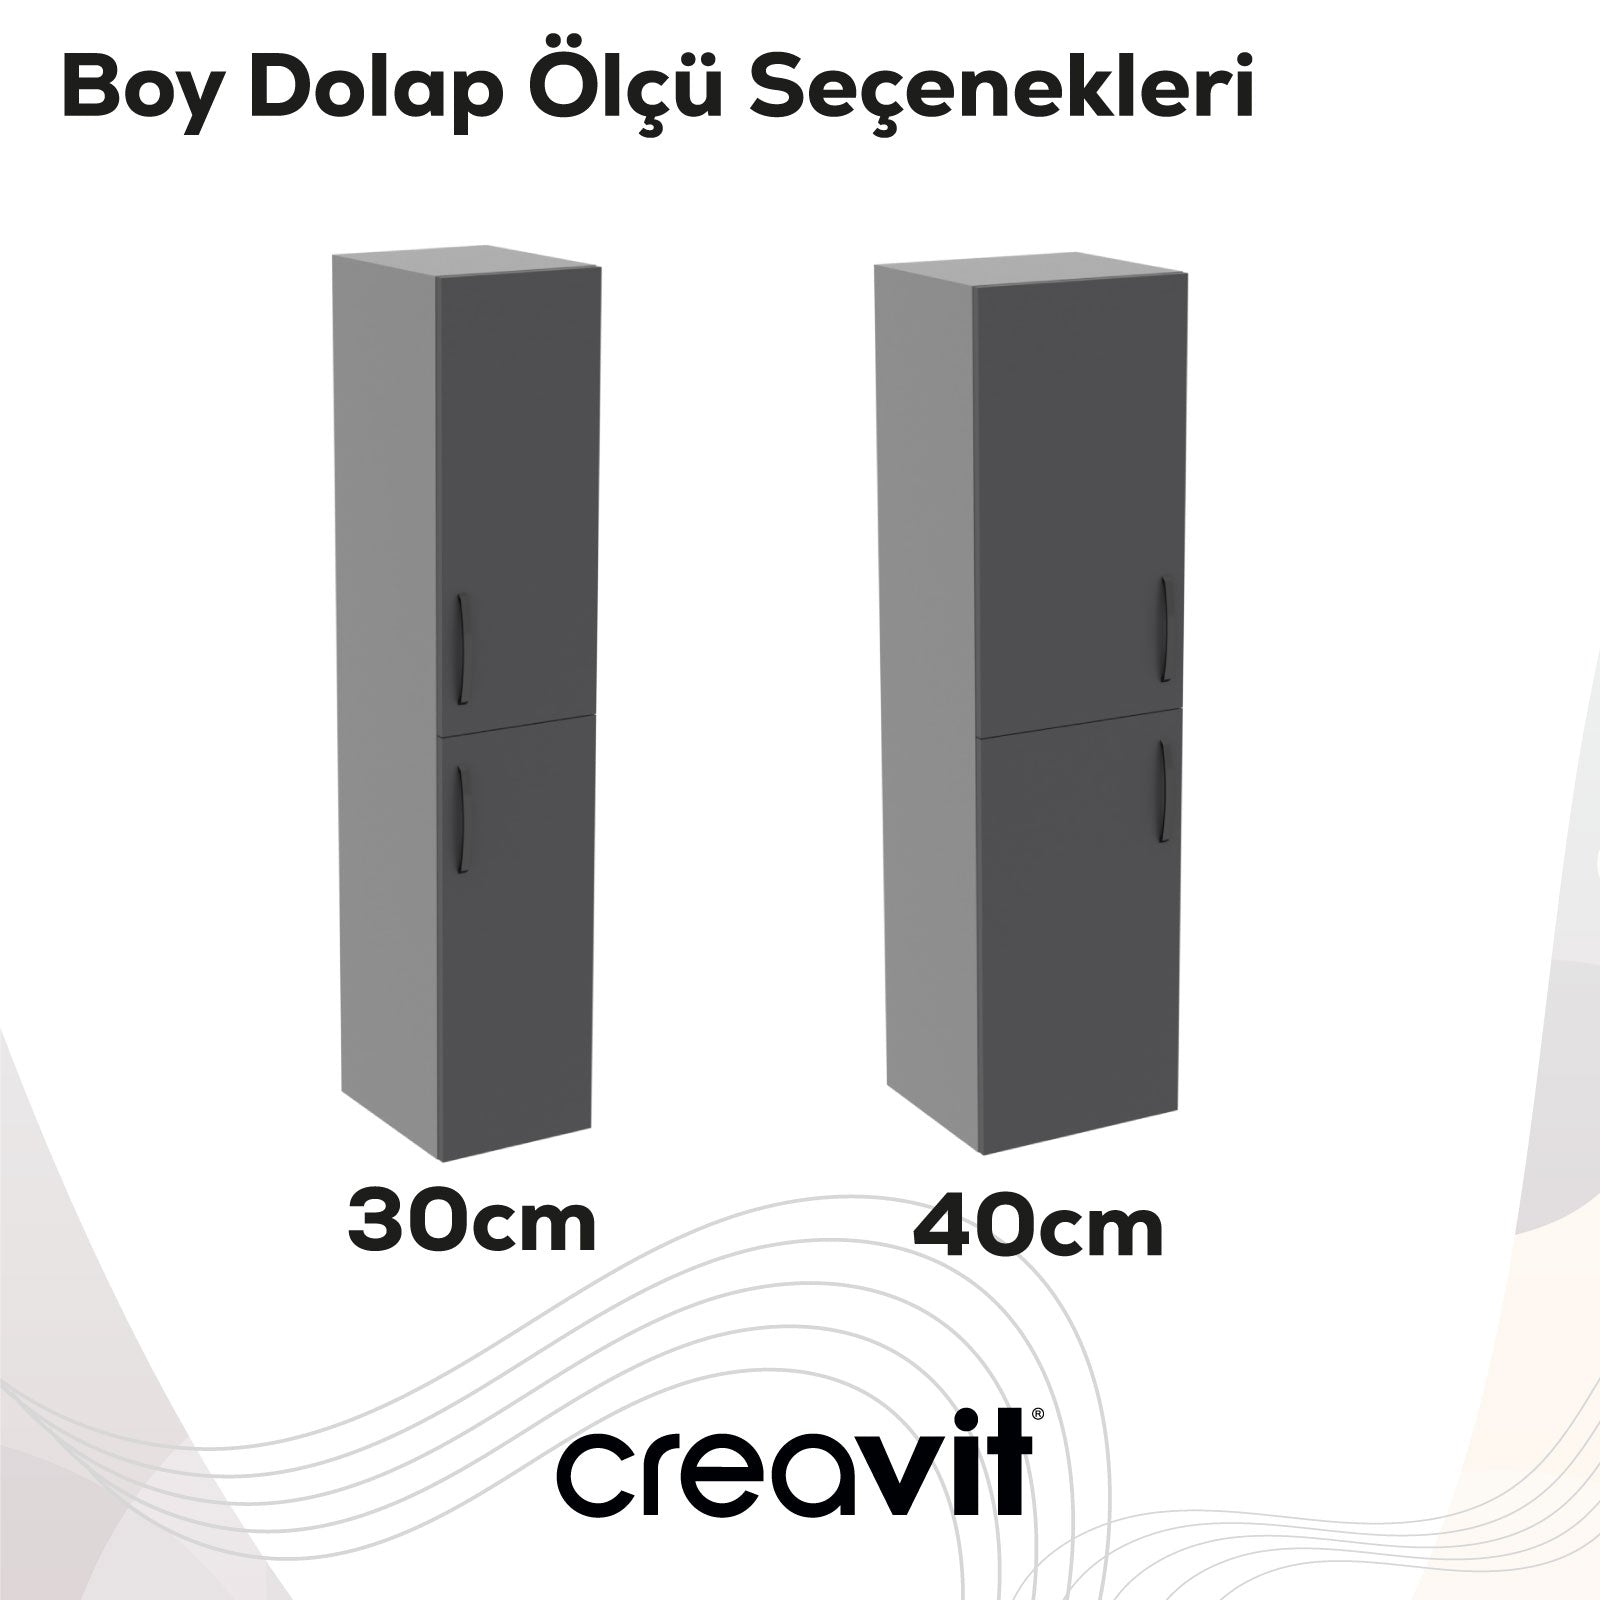 D10 30 cm Sol Boy Dolabı Gri Melamin Gövde Lake Kapak - Creavit | Banyo Bu Tarafta